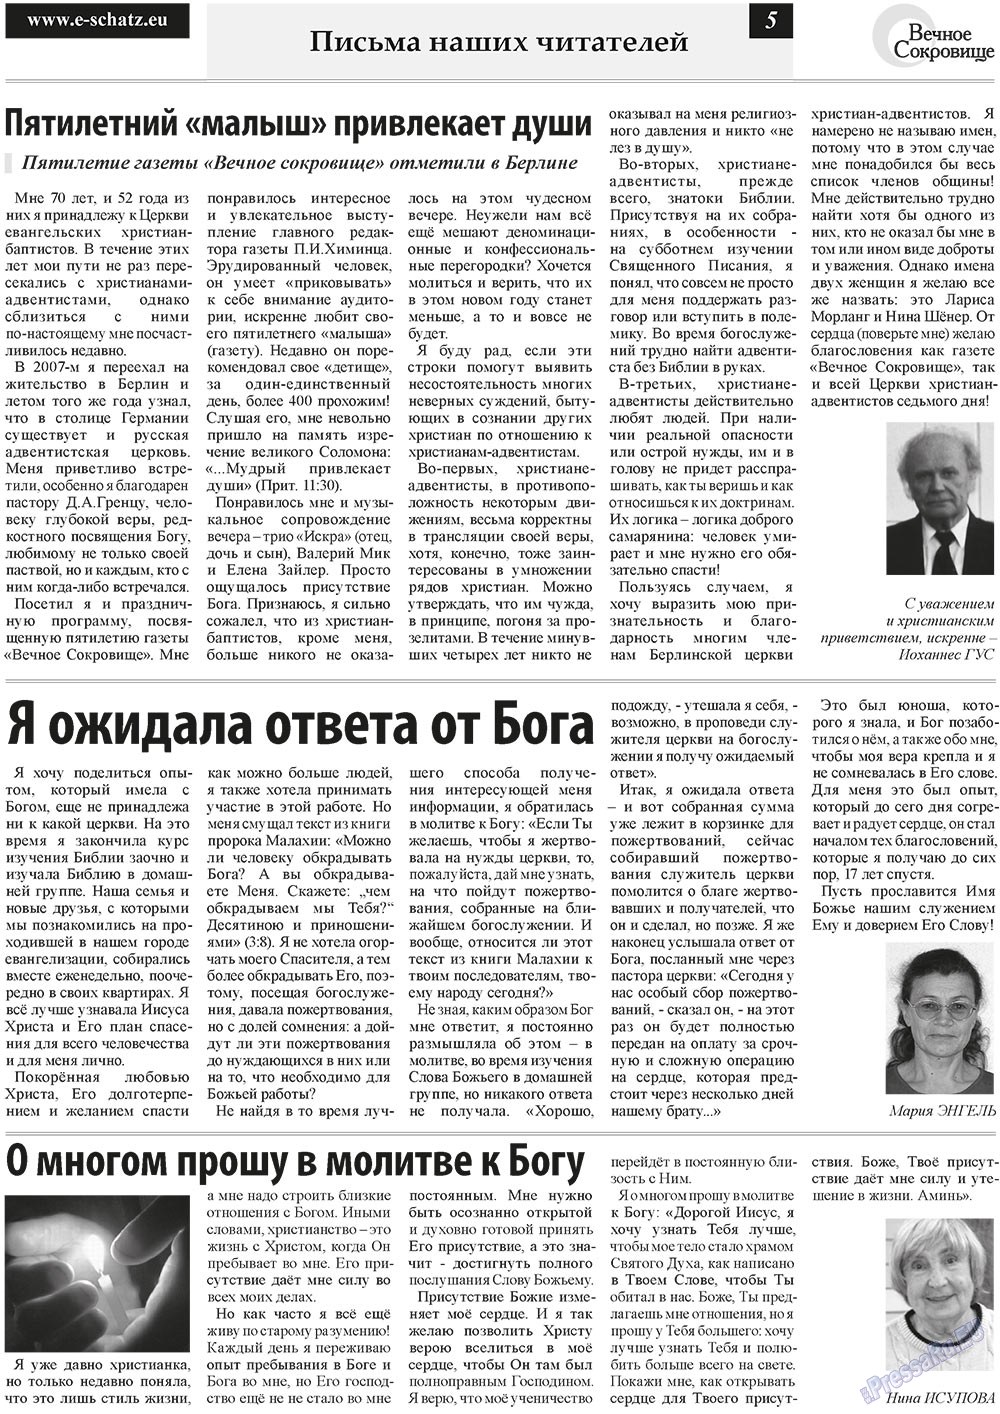 Вечное сокровище, газета. 2011 №1 стр.5